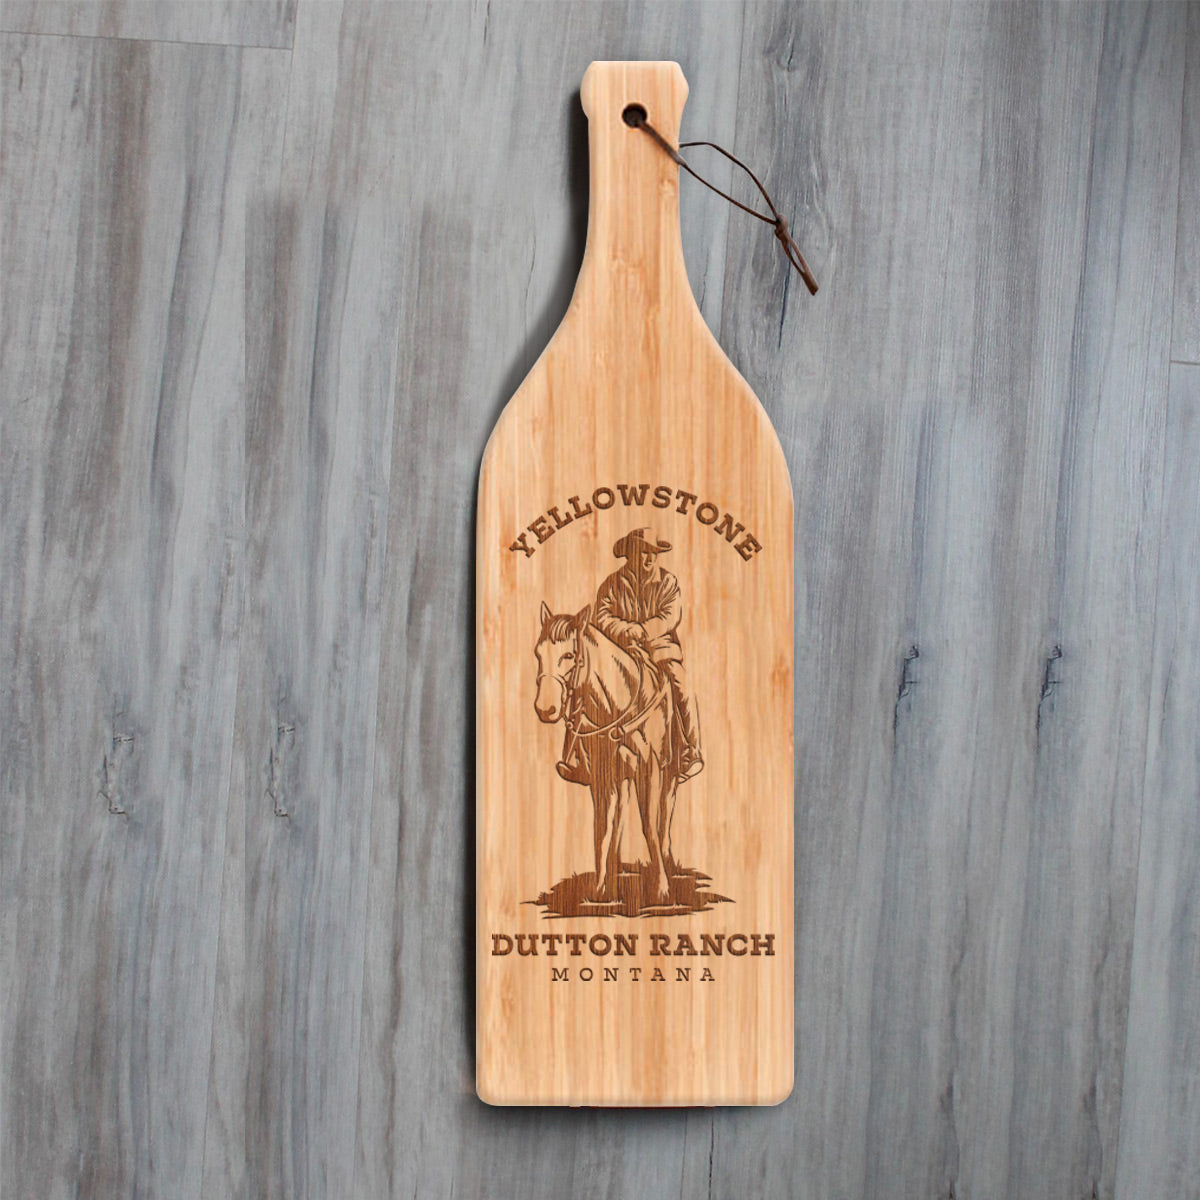 Yellowstone Dutton Ranch Montana Wine Bottle Cutting Board